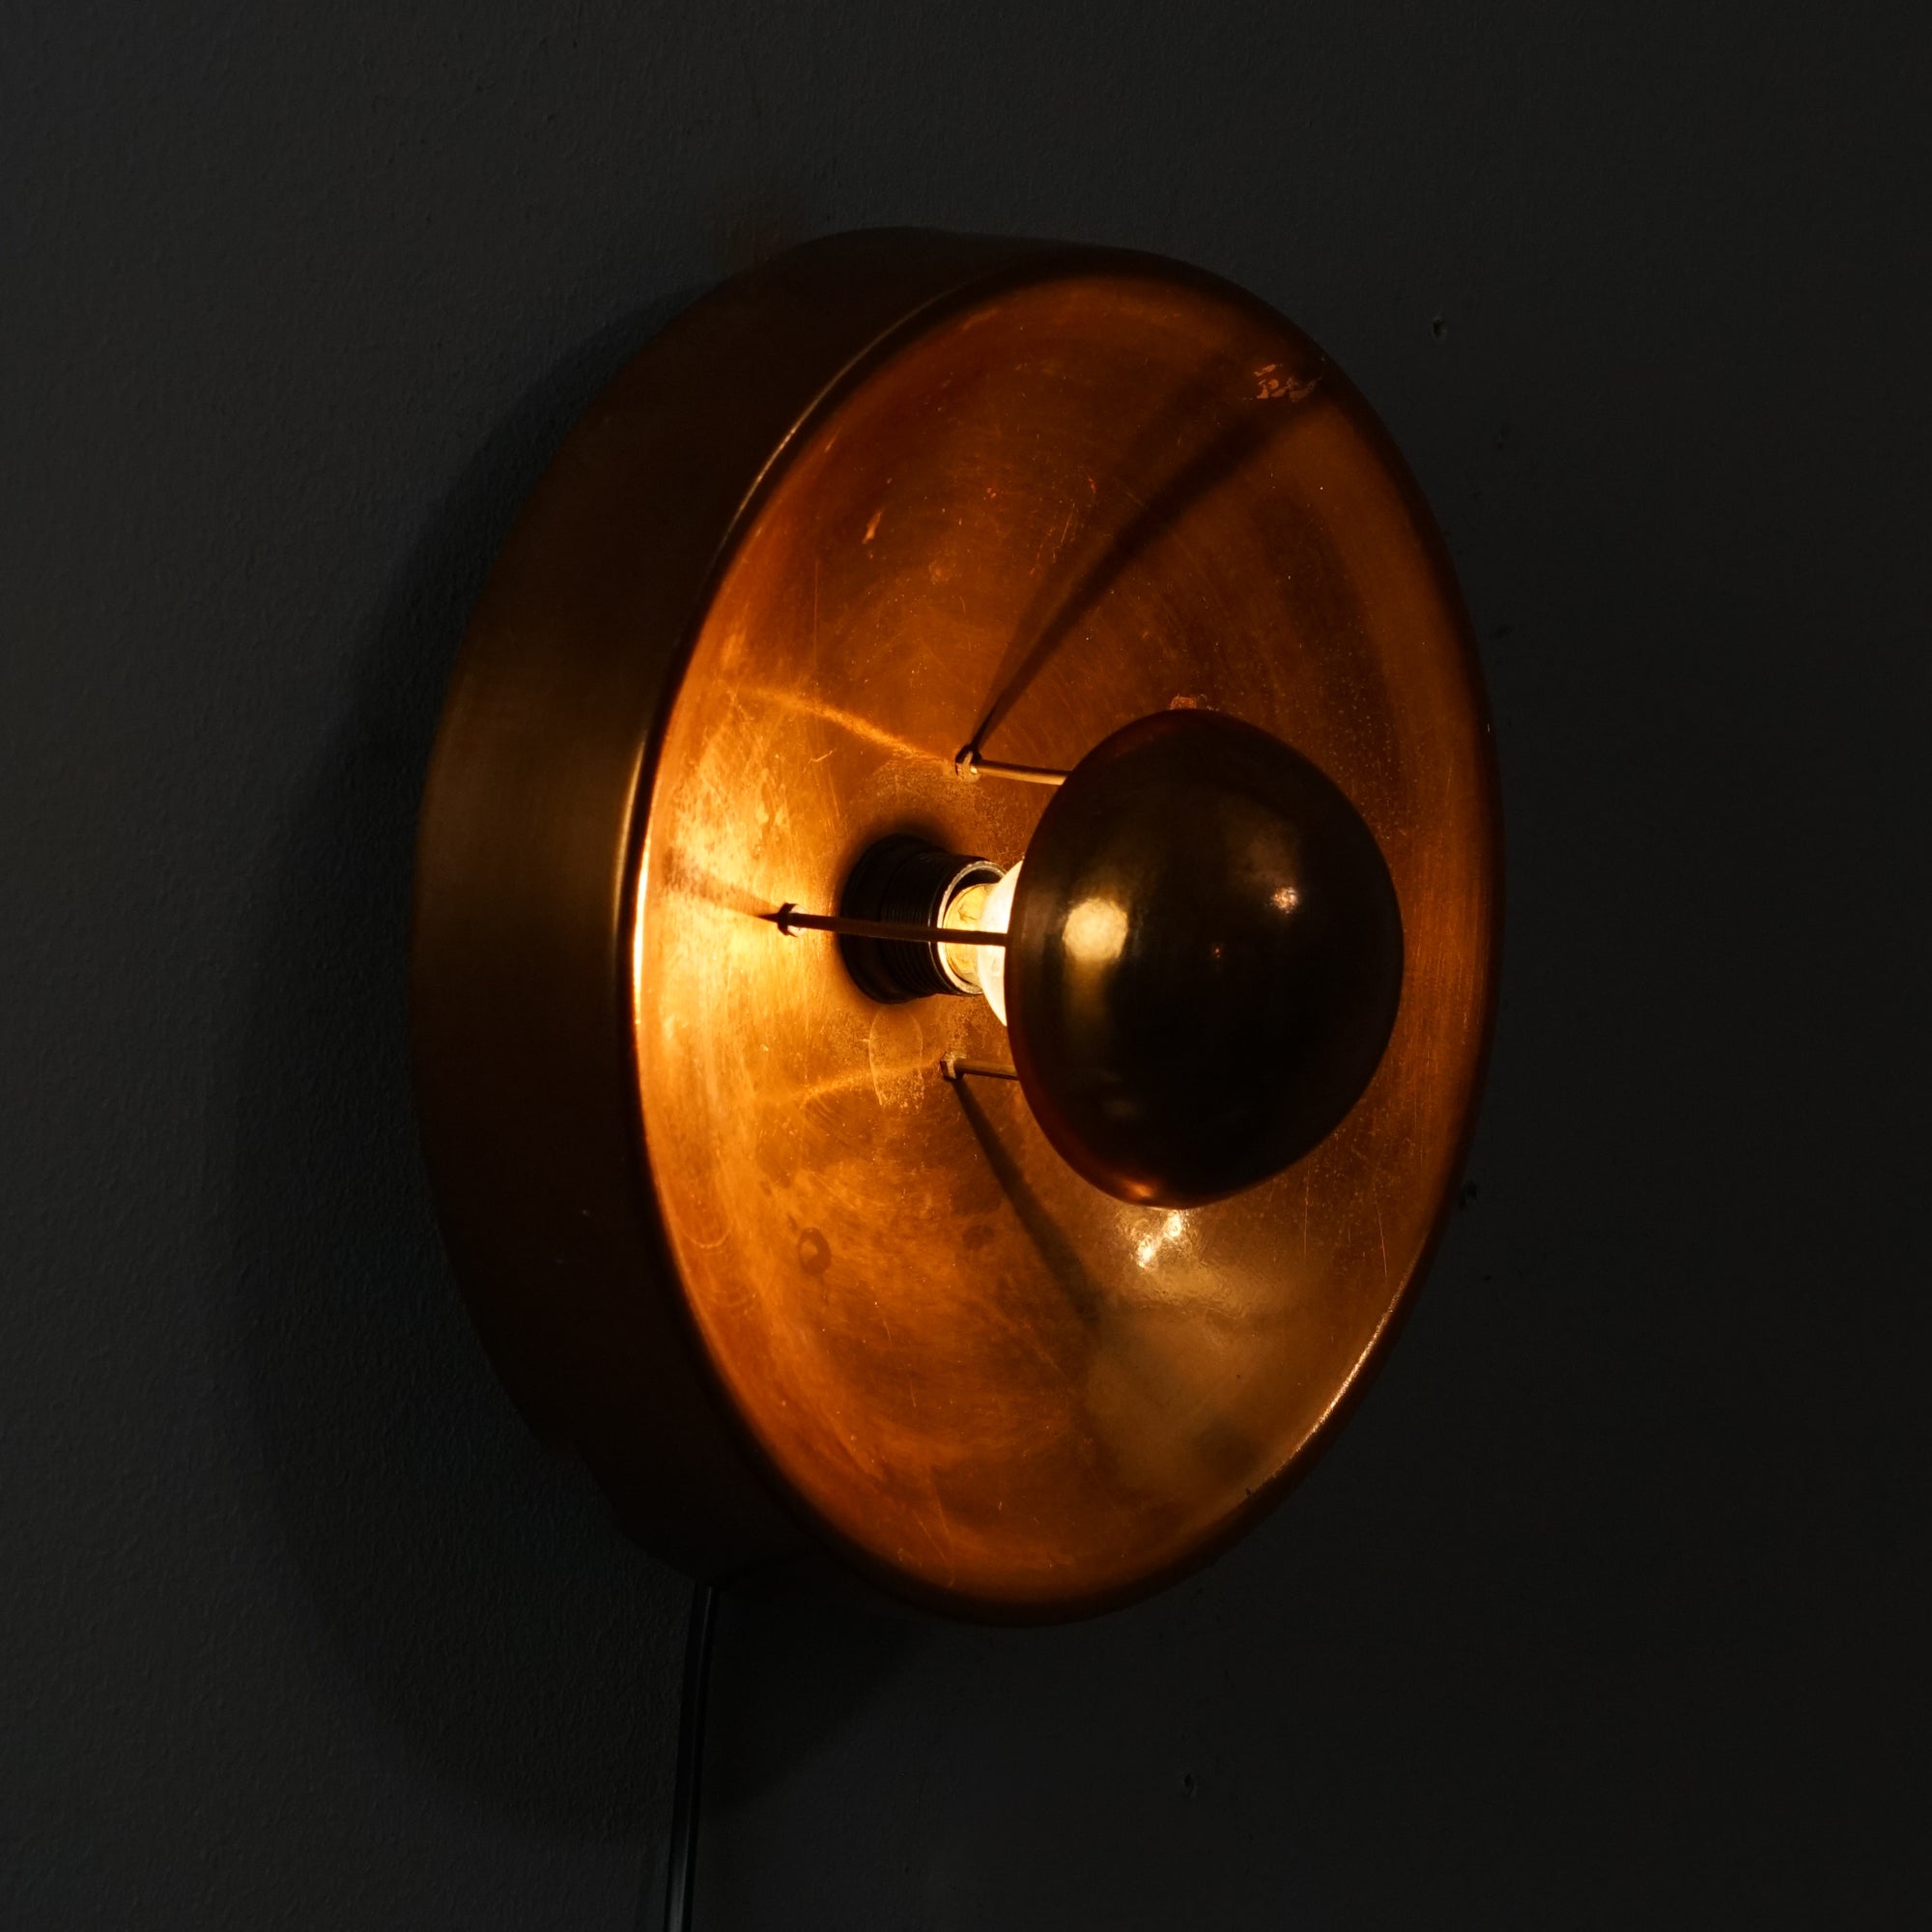 Kuparinen ympyränmuotoinen seinävalaisin, jossa kuparinen kupu lampun edessä.